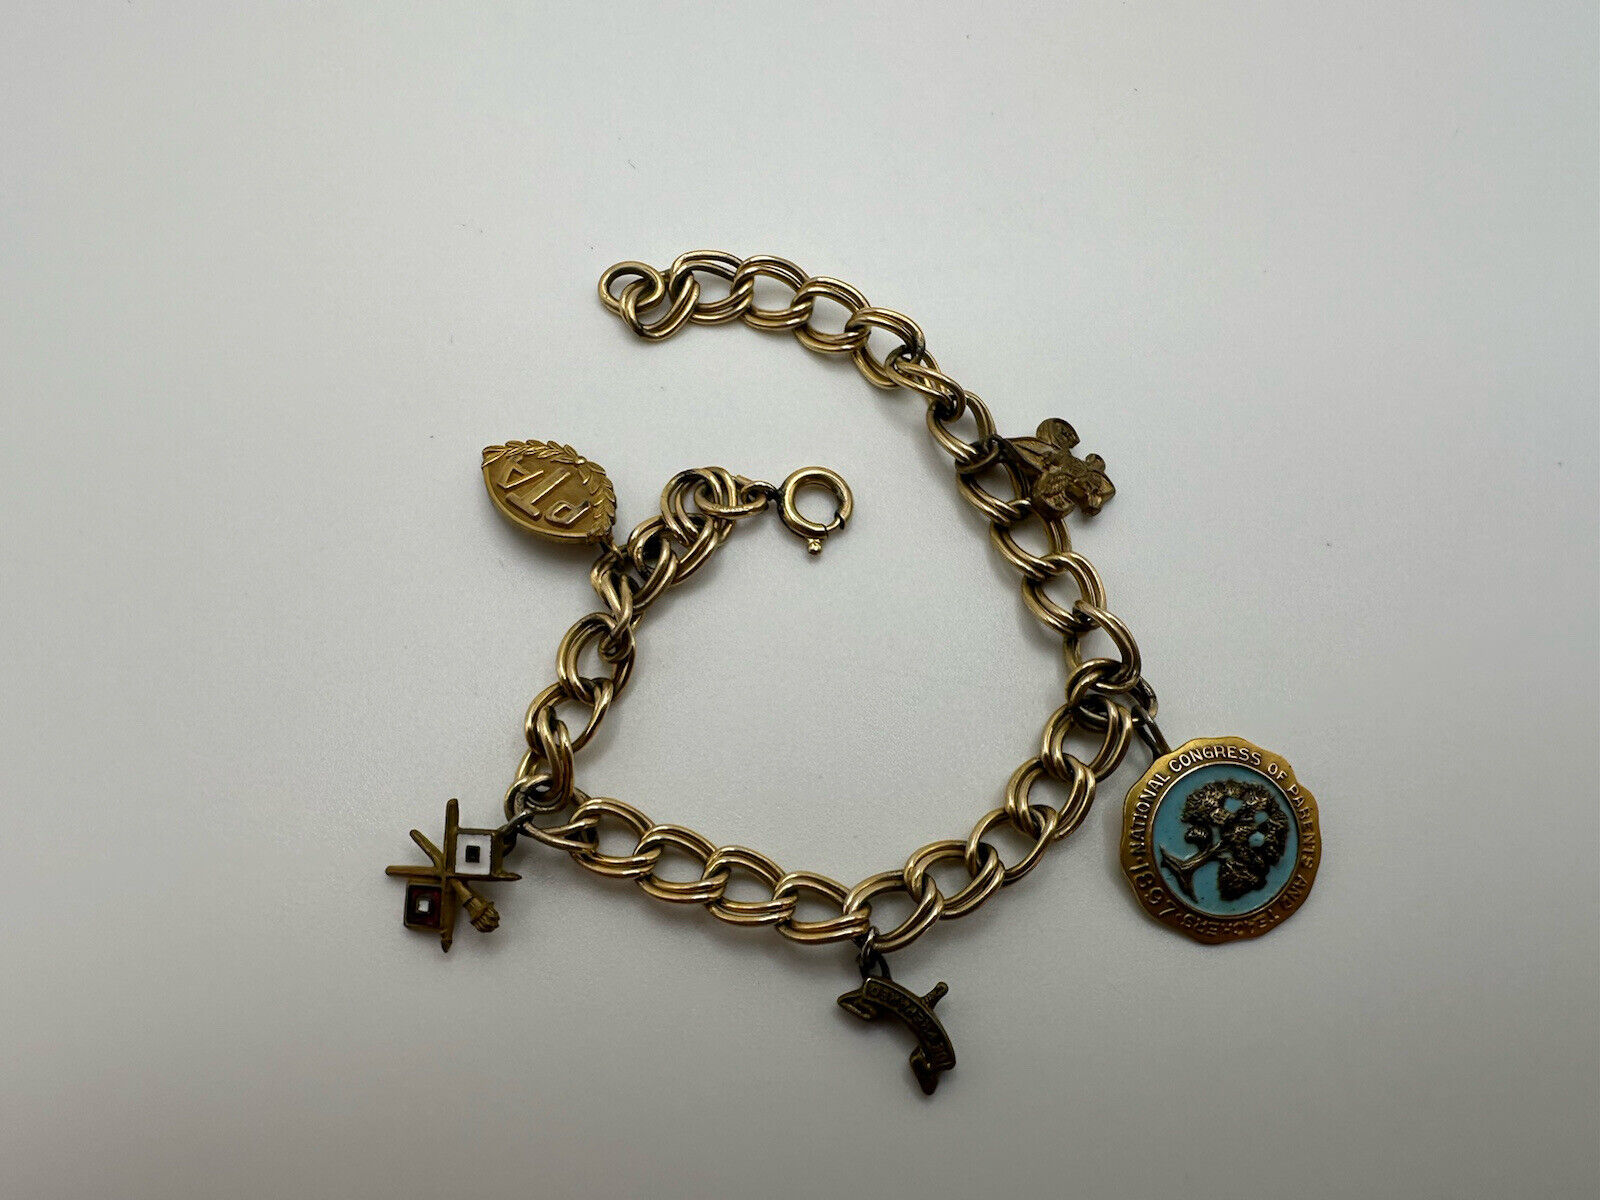 Antique 1897 Unique Boy Scout Parents Teachers Handmade Pin Charm Bracelet